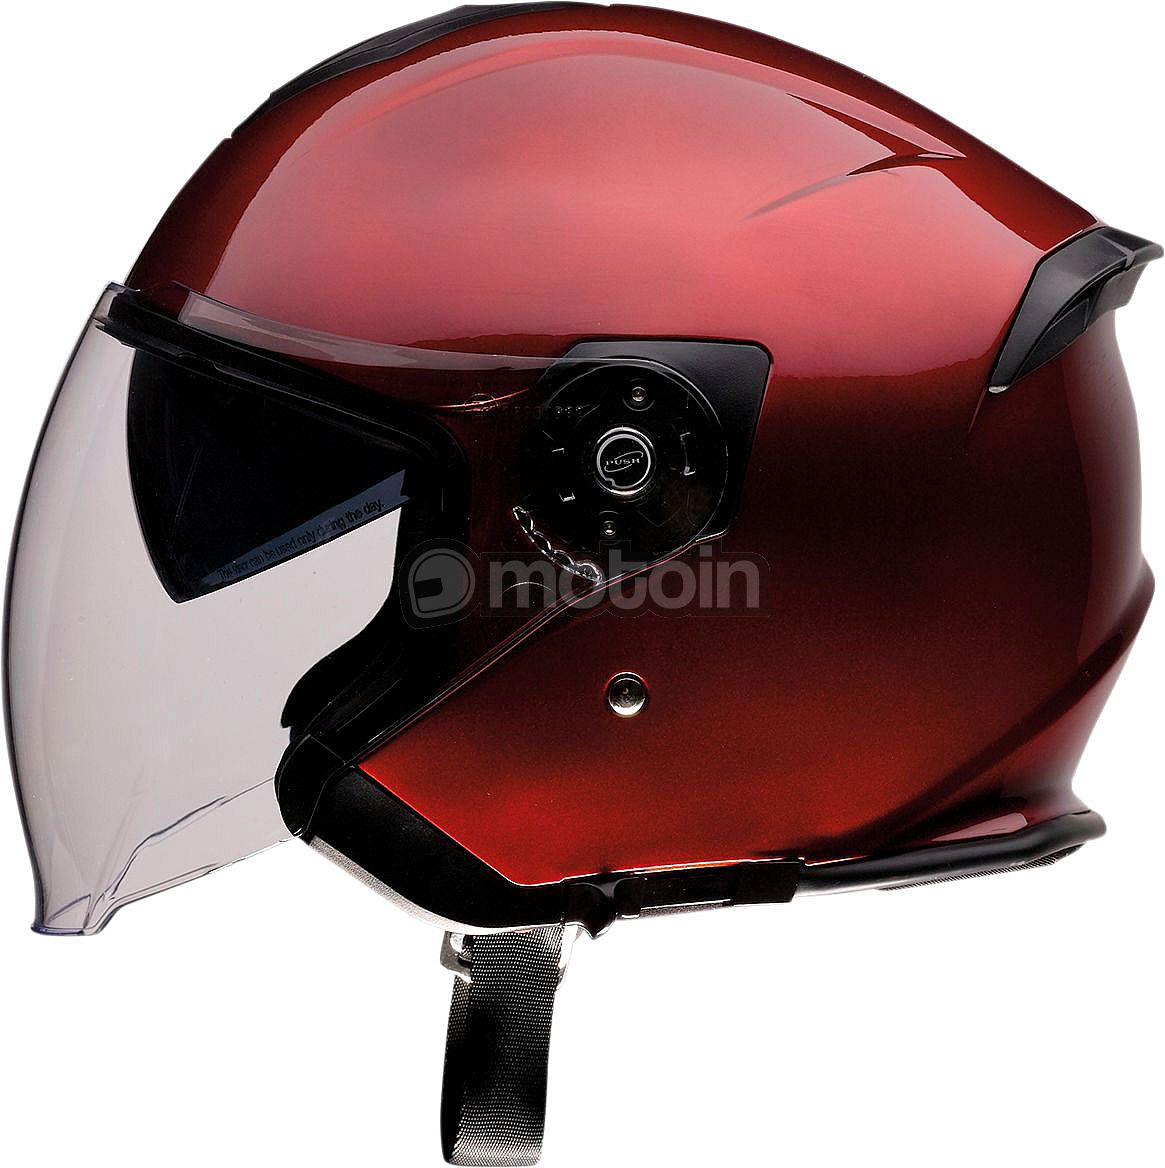 Z1R Road Maxx, jet helmet